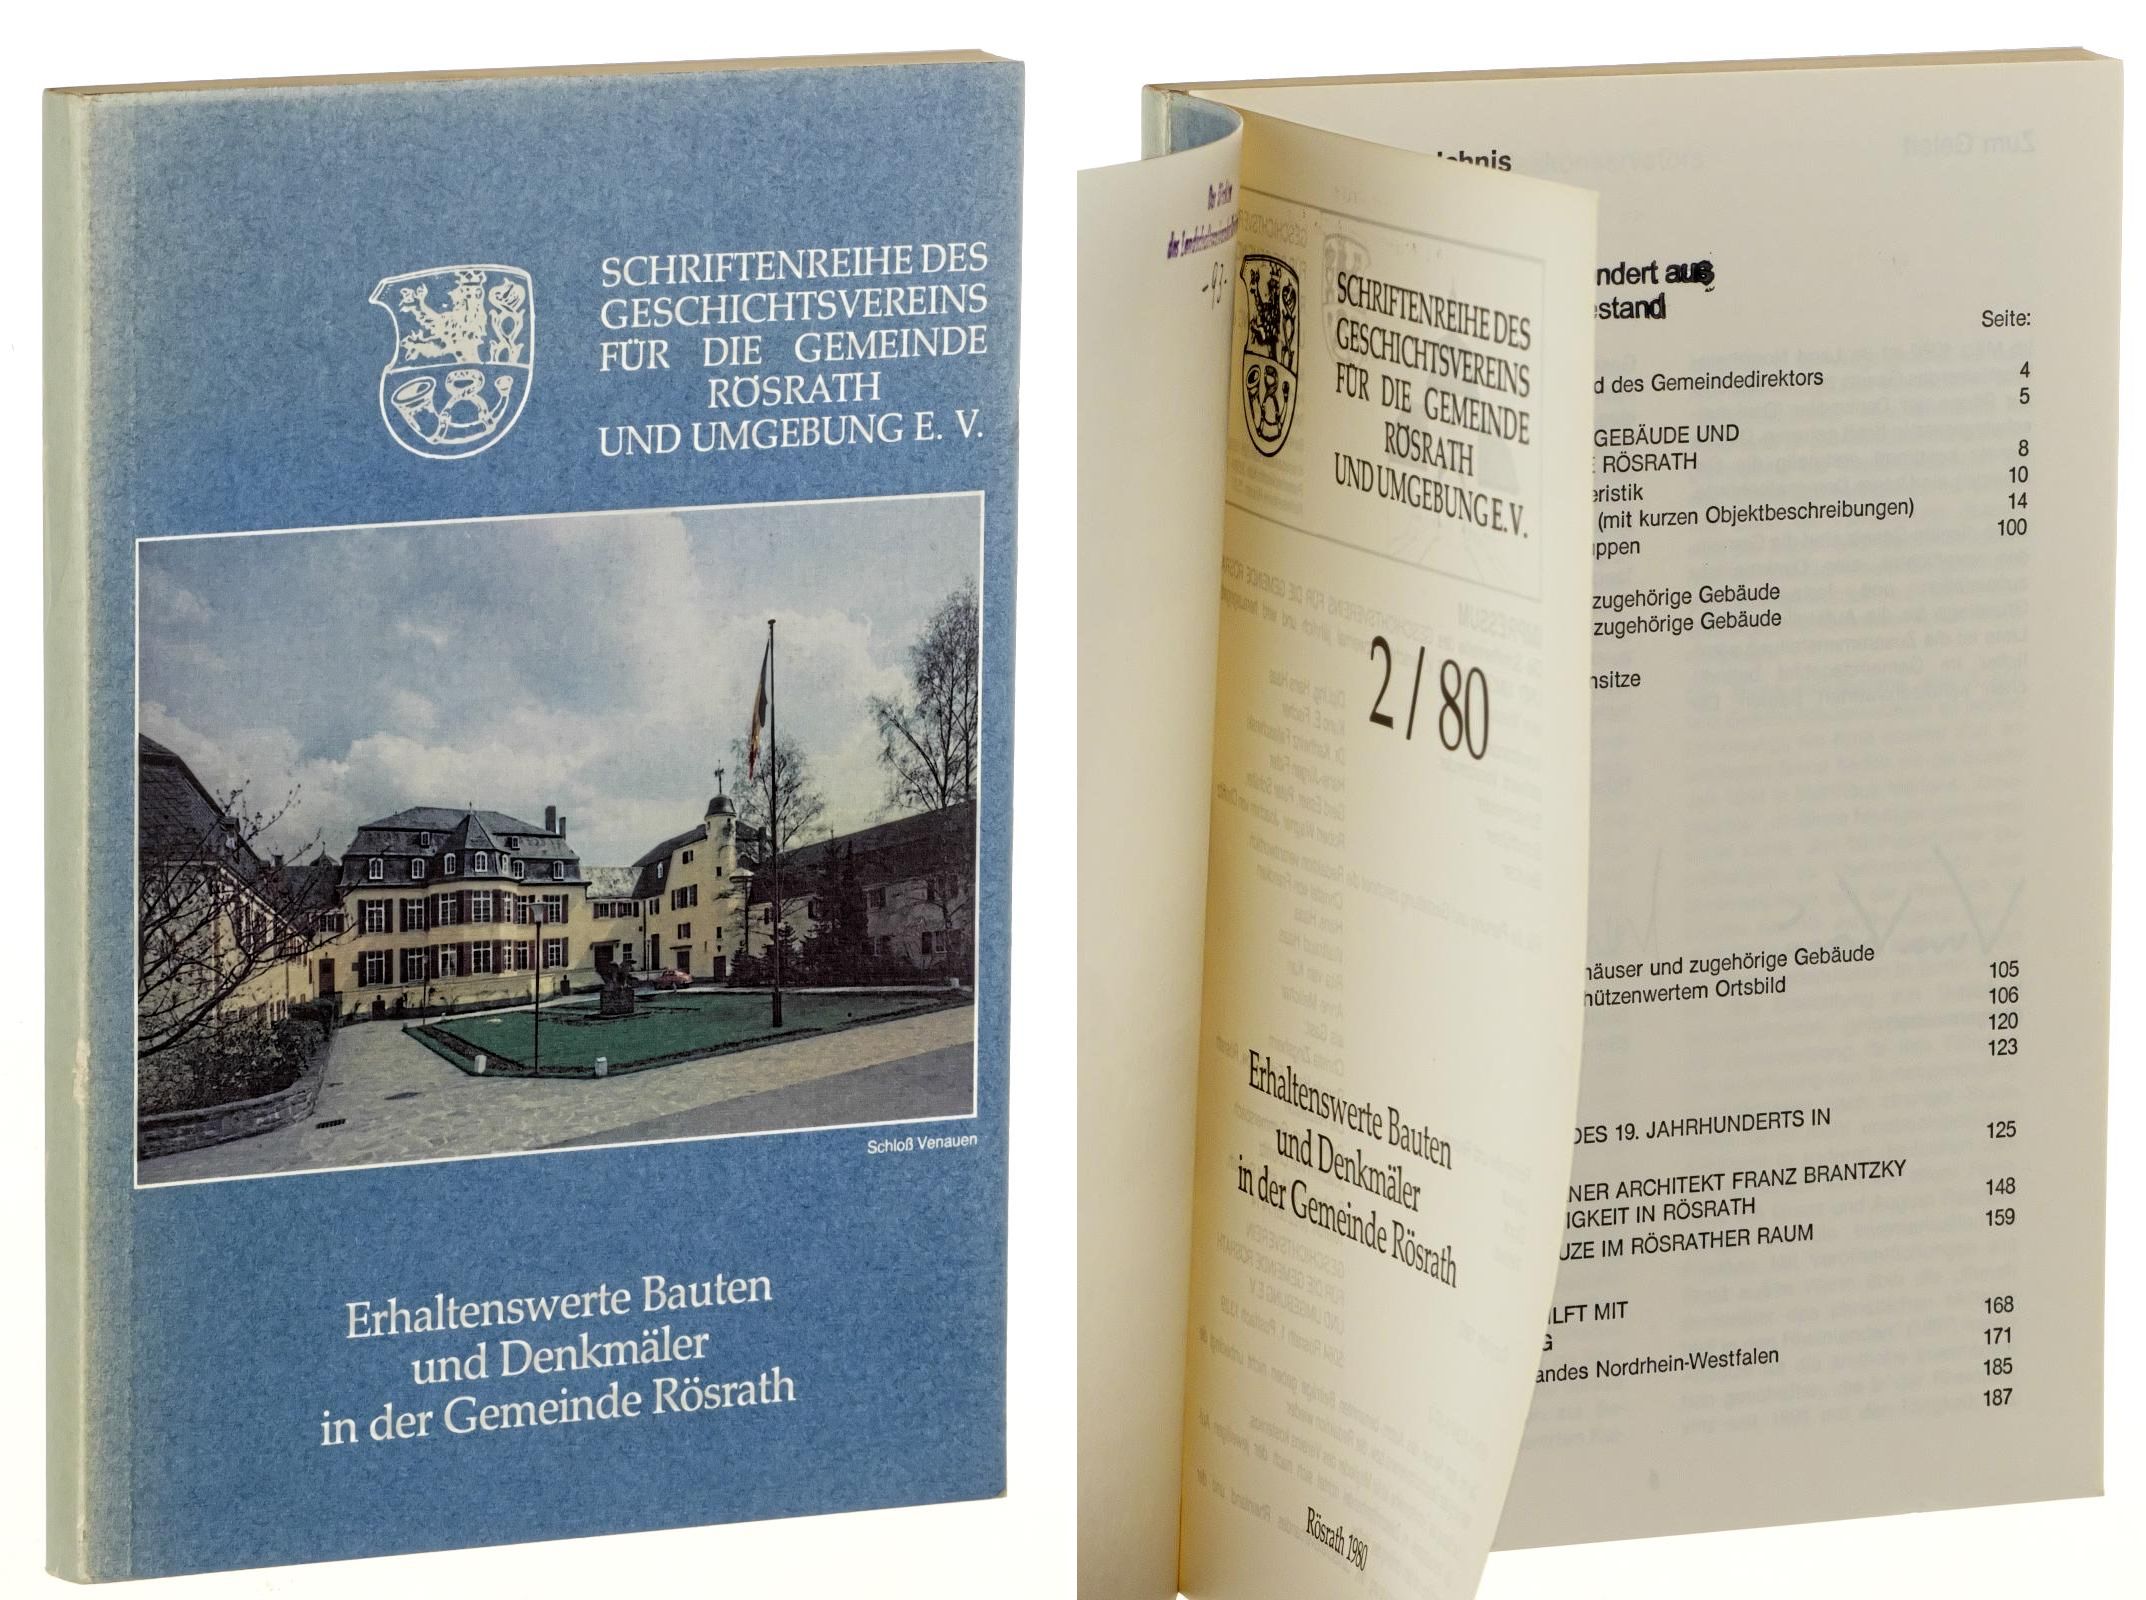   Schriftenreihe des Geschichtsvereins für die Gemeinde Rösrath und Umgebung e.V. Band 2 (1980): Erhaltenswerte Bauten und Denkmäler in der Gemeinde Rösrath. 